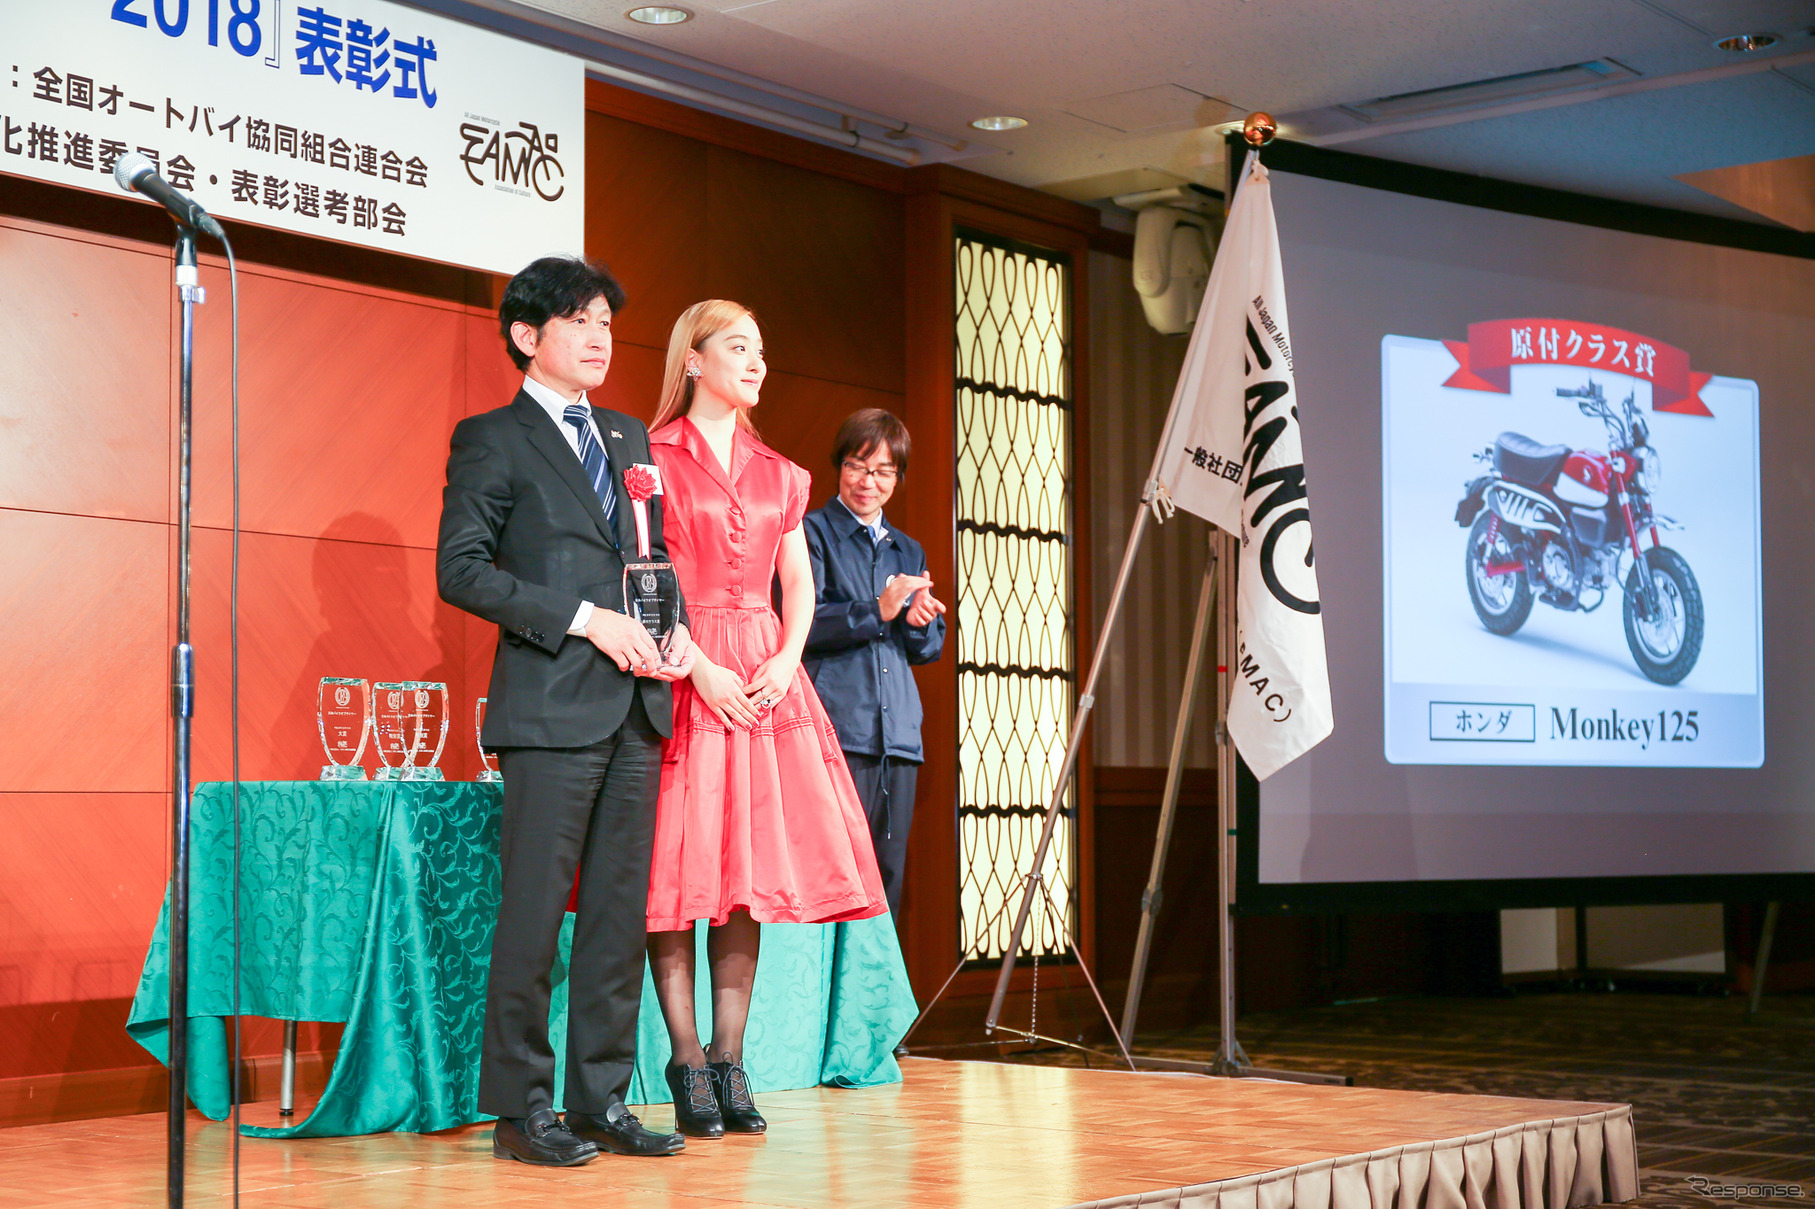 原付クラス賞はホンダMonkey125が選出され、ホンダモーターサイクルジャパンの赤坂正人氏が受領した。